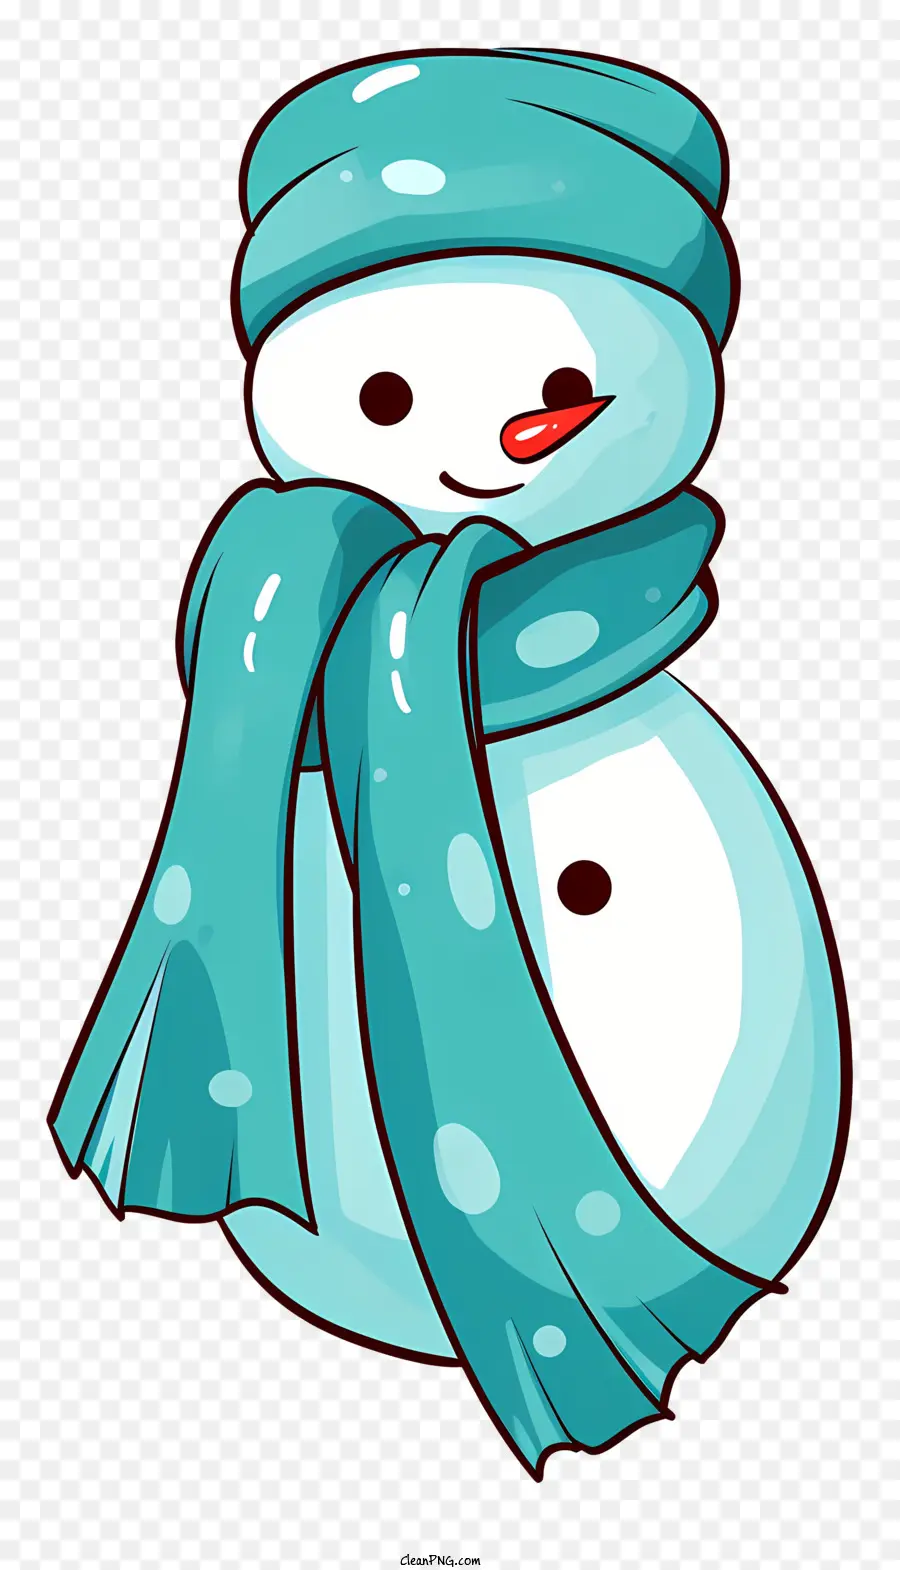 Người tuyết - Người tuyết cười với chiếc khăn và mũ màu xanh